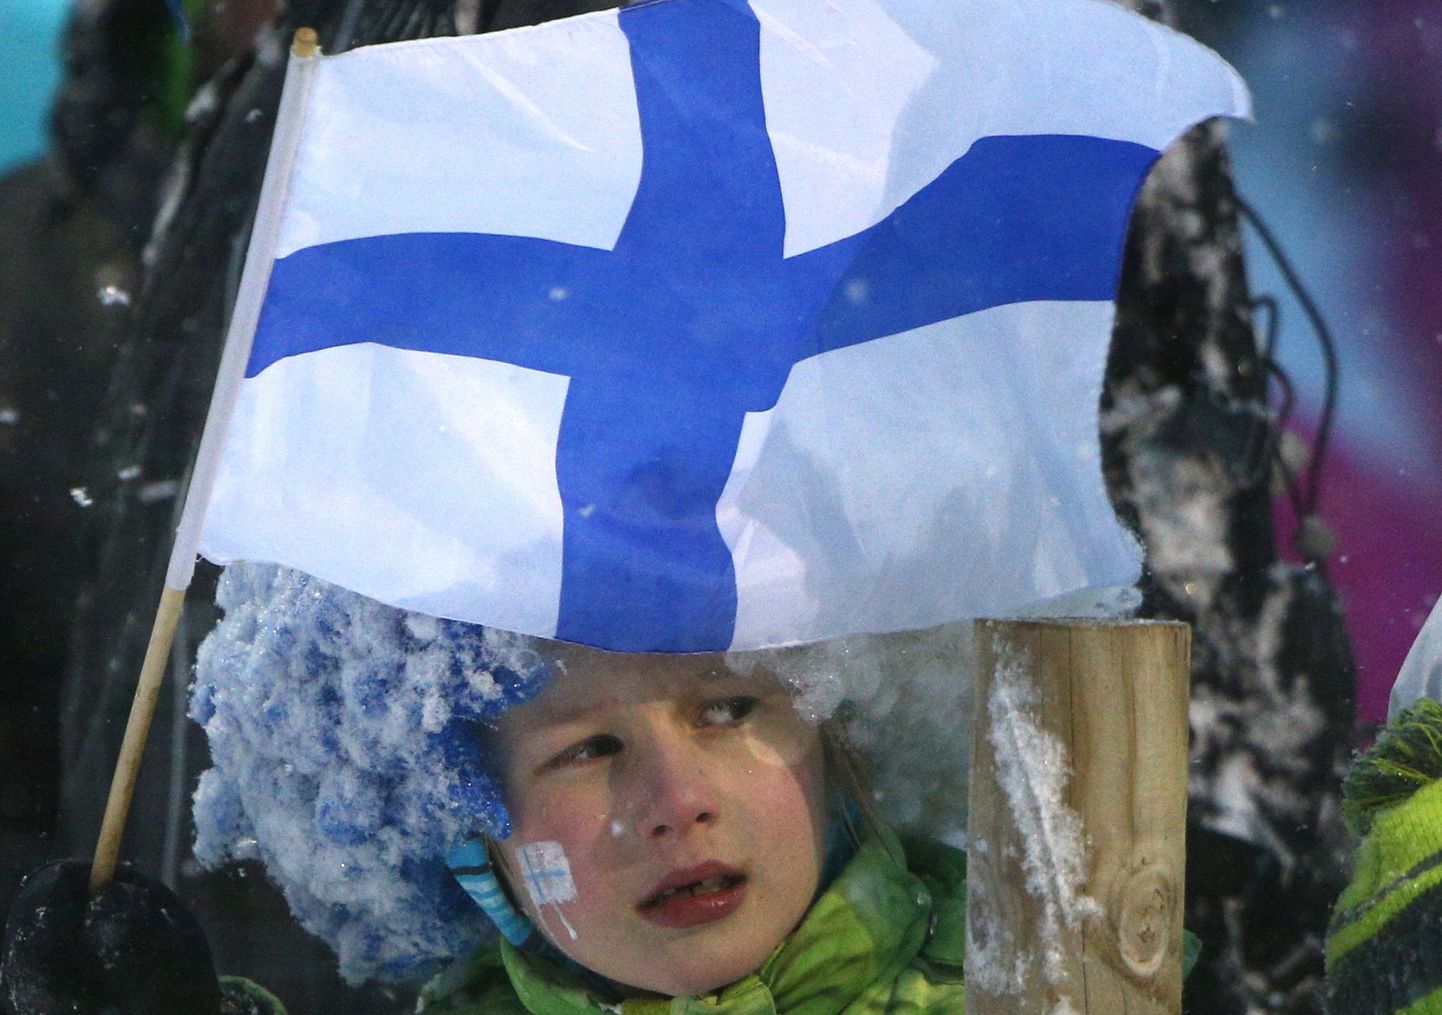 Soome poiss elab kaasa võistlusele.